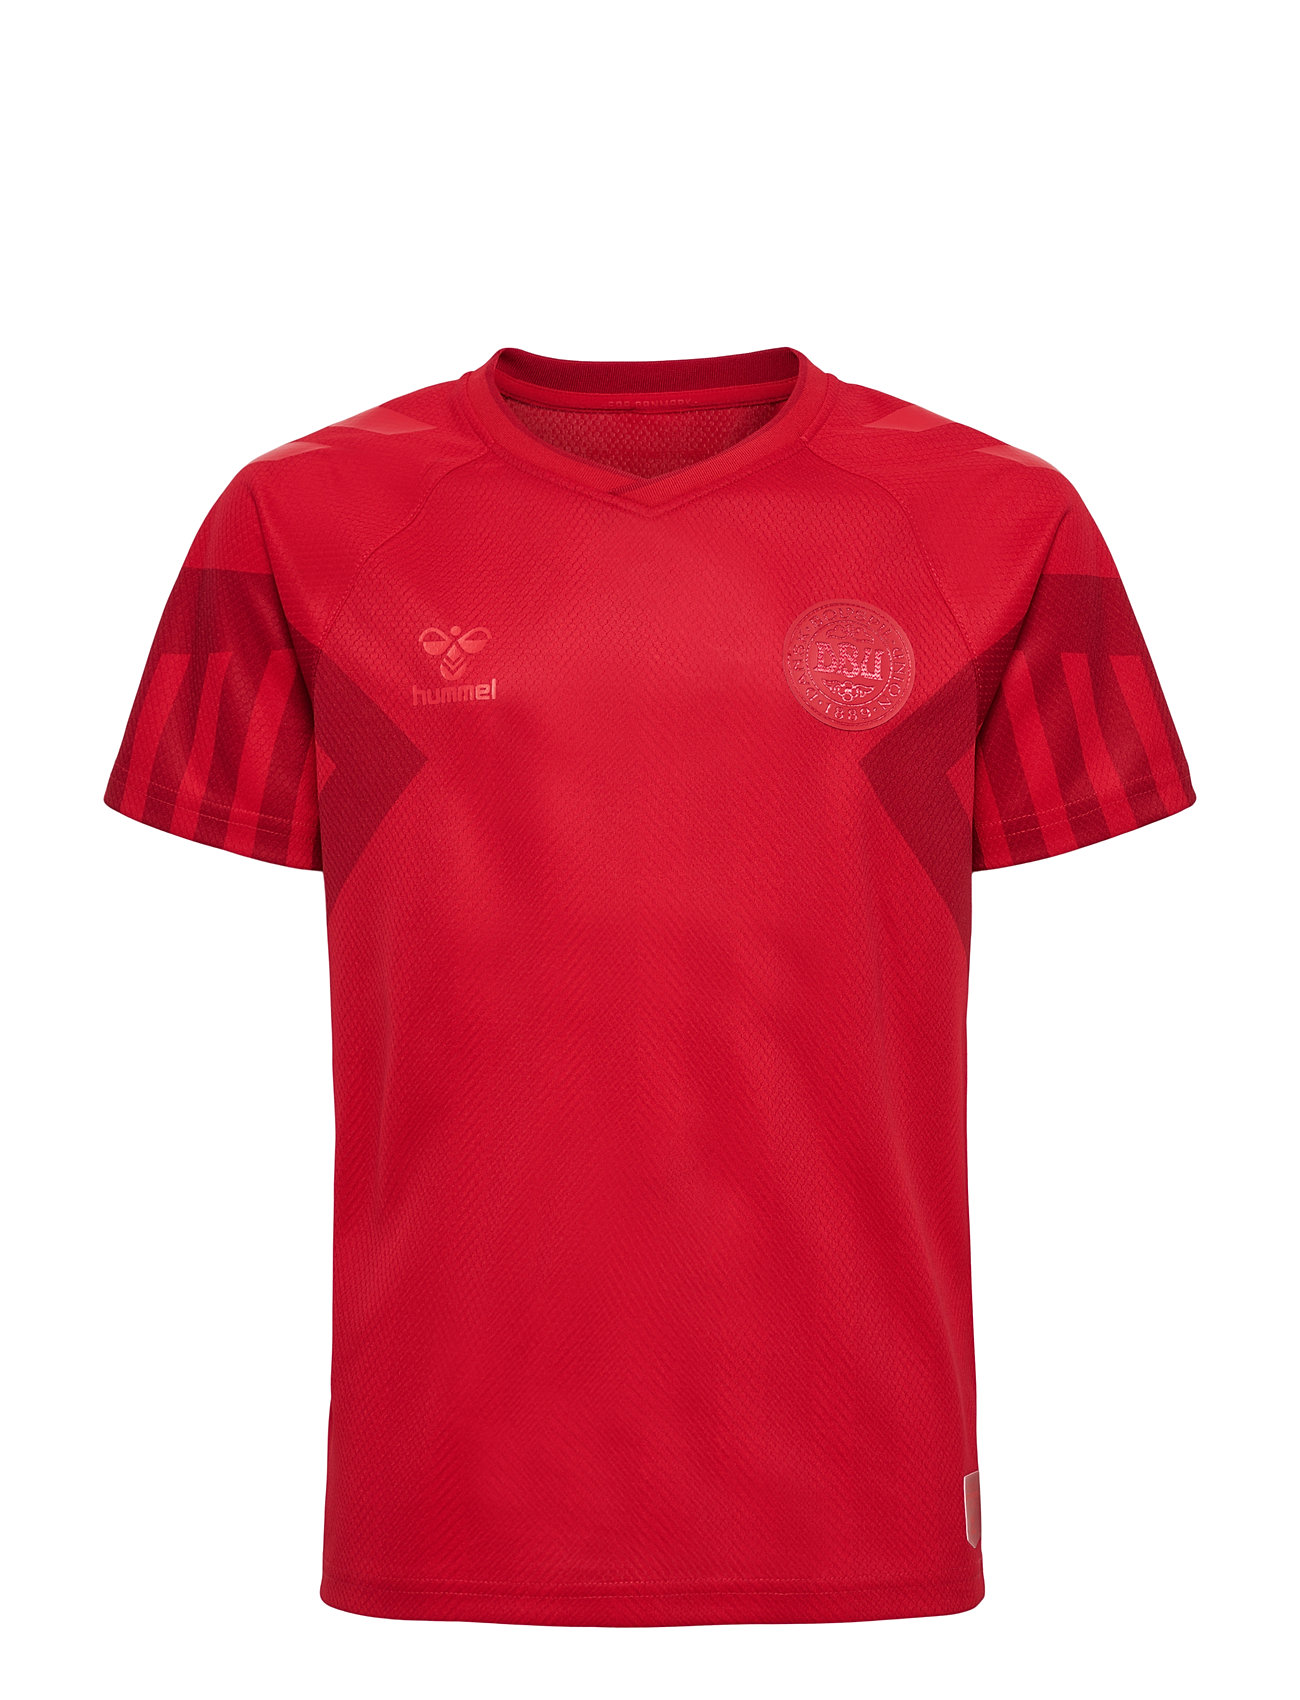 Dbu 22 Landsholdstrøje Home Børn Sport T-shirts Football Shirts Red Hummel